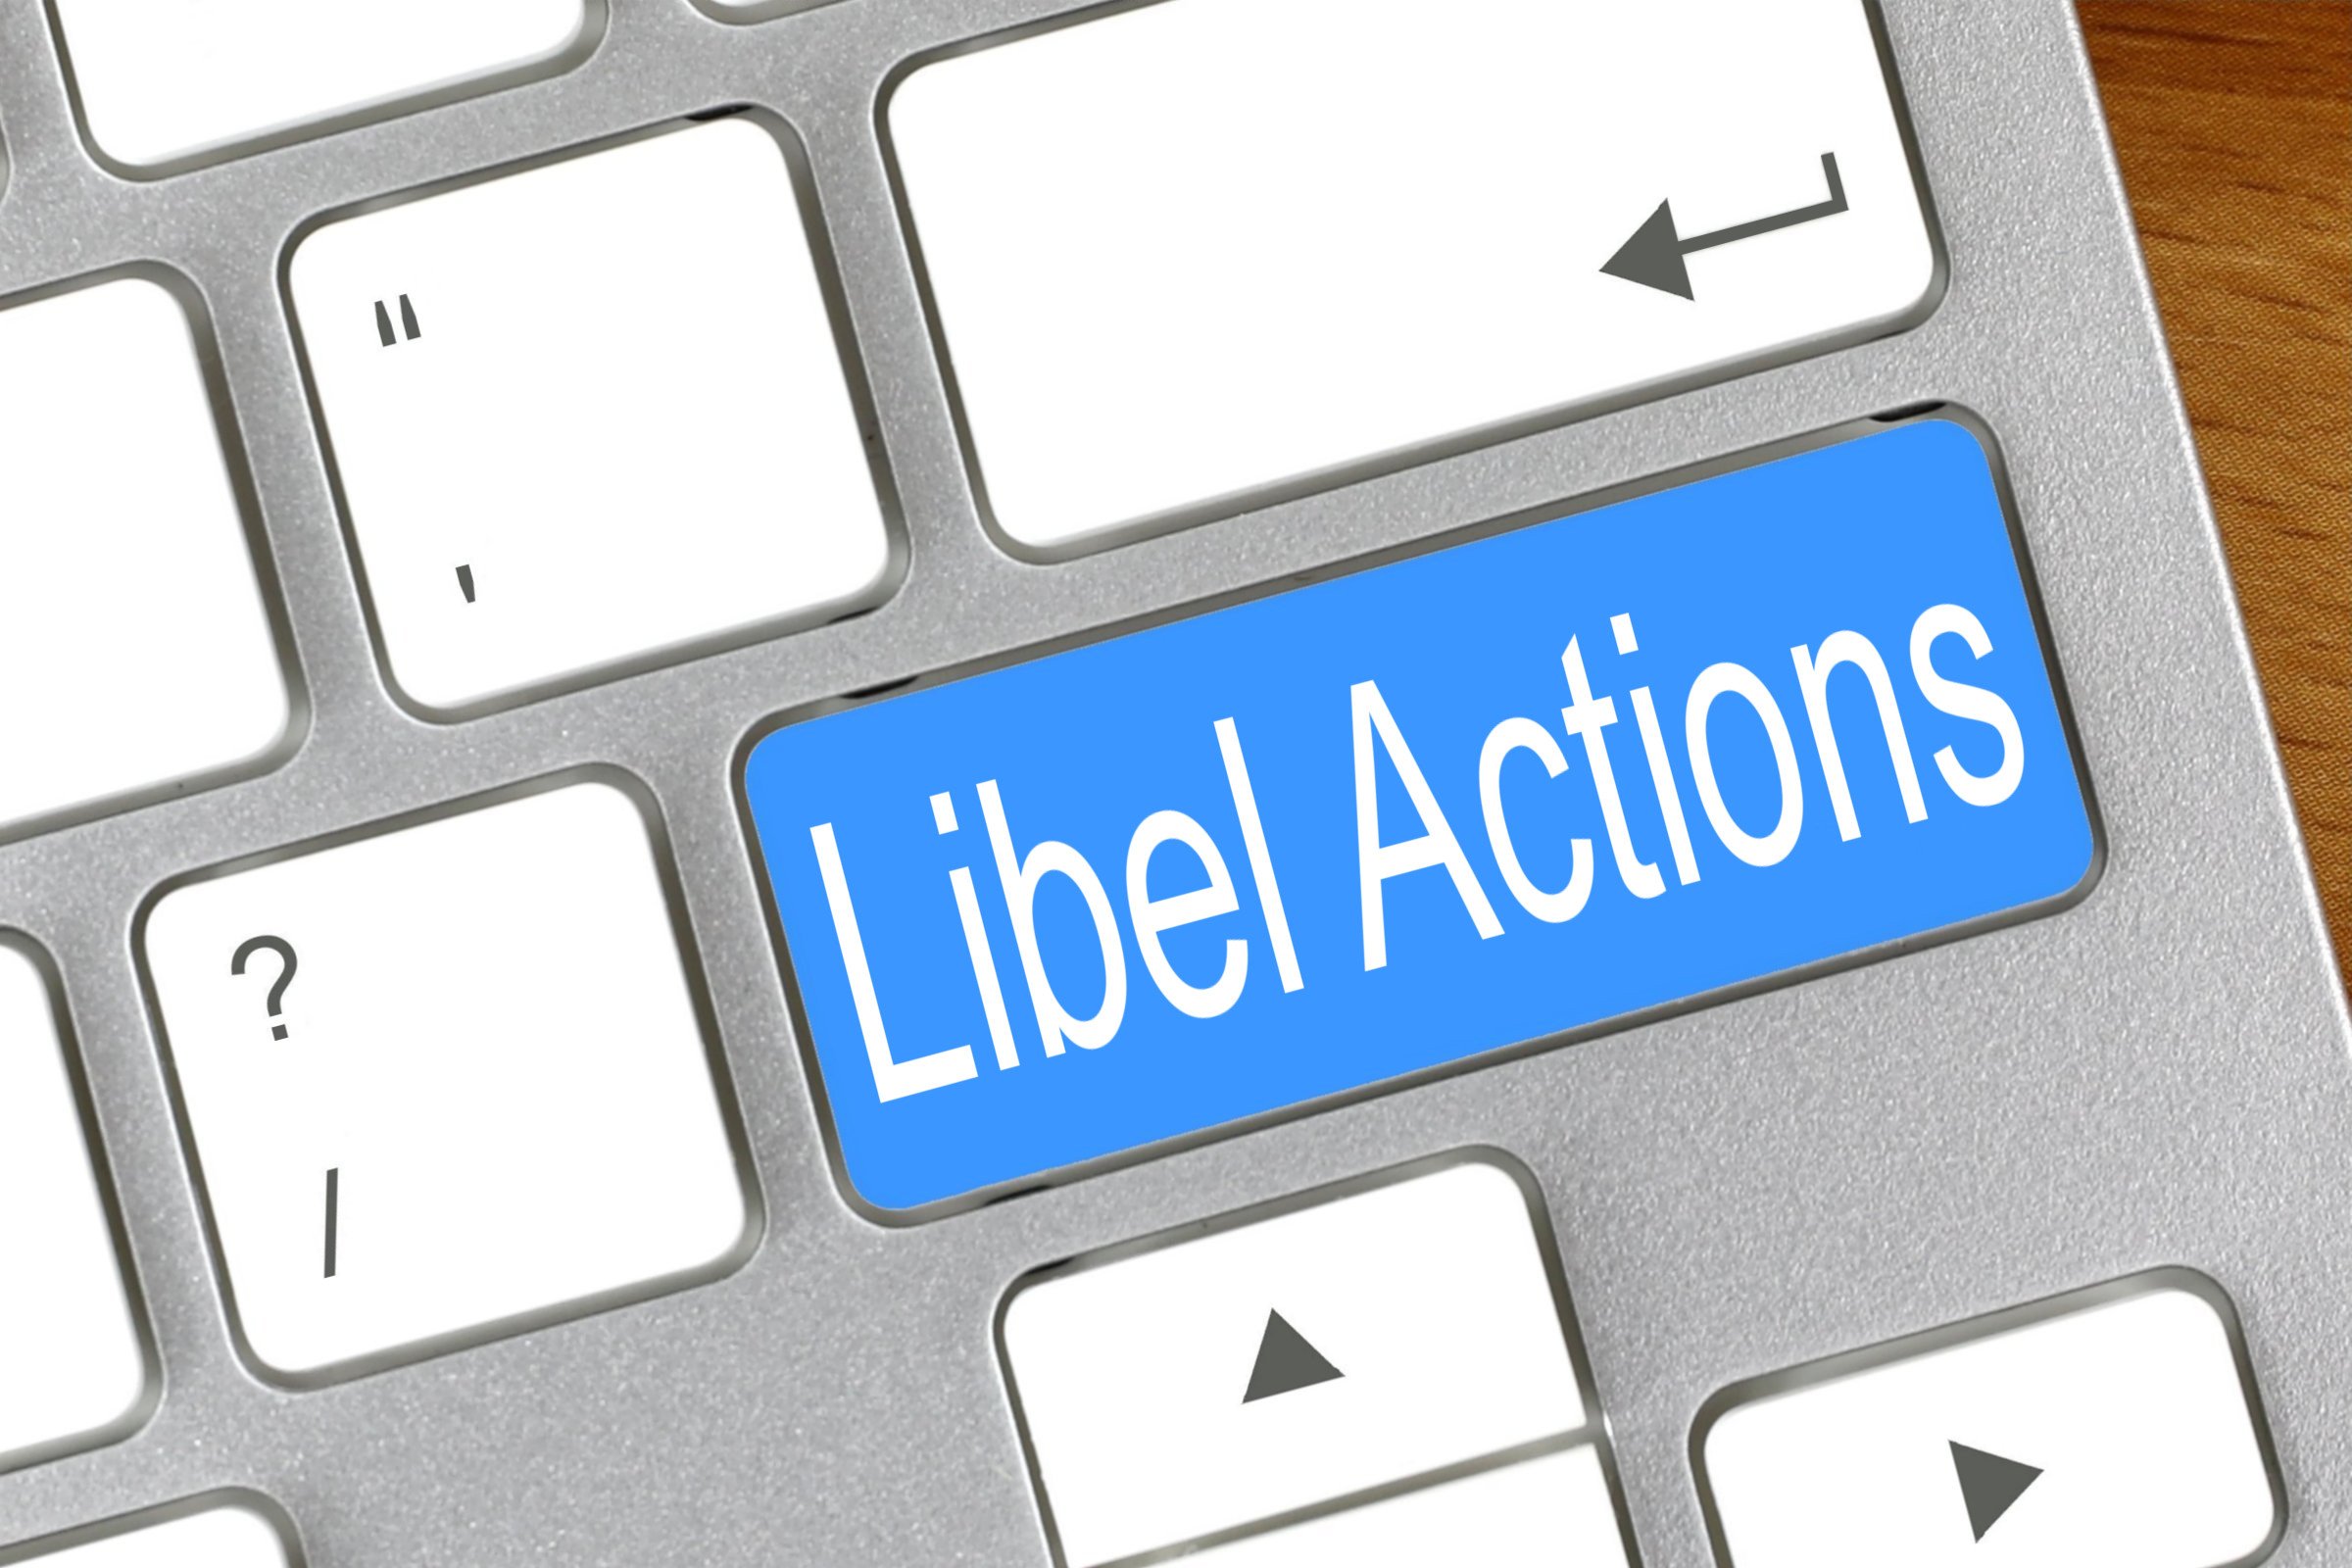 libel actions